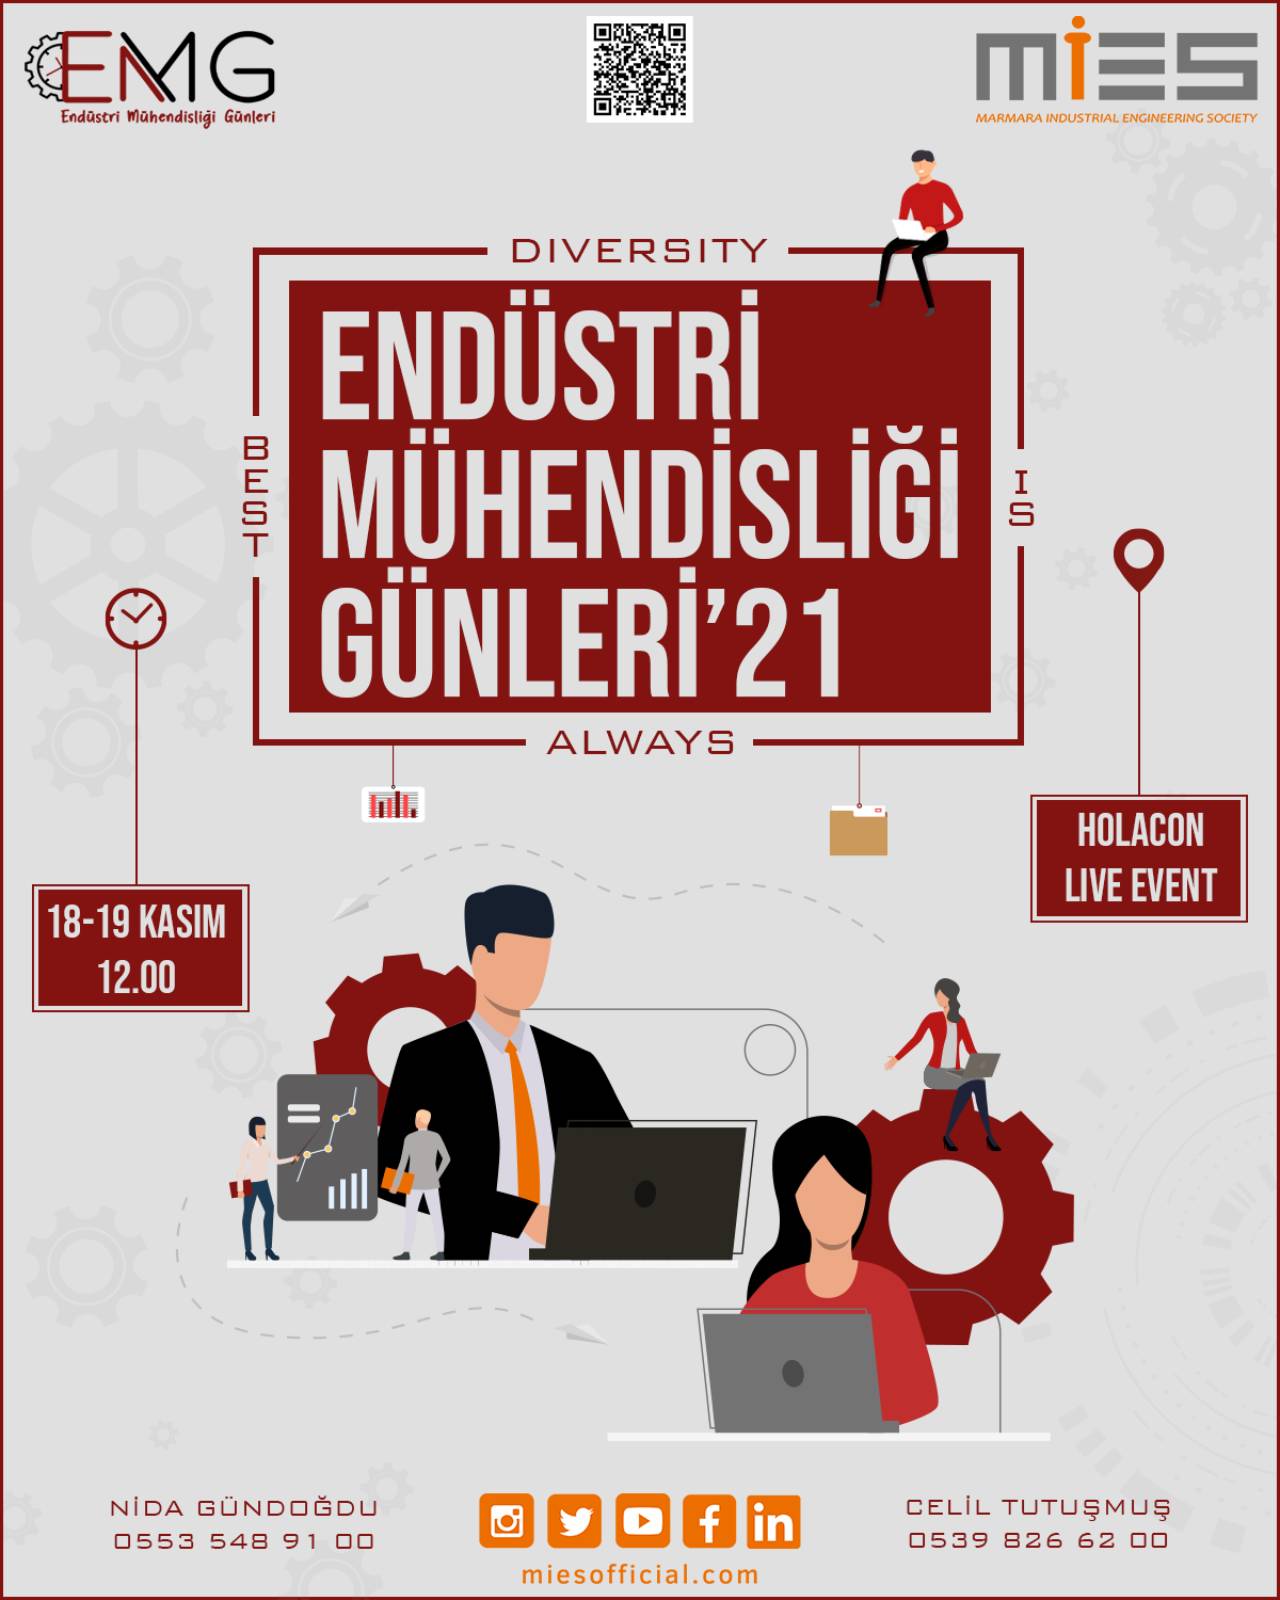 Marmara Üniversitesi Endüstri Mühendisliği Kulübü’nün Düzenlediği Endüstri Mühendisliği Günleri, 18-19 Kasım’da Gerçekleşecek